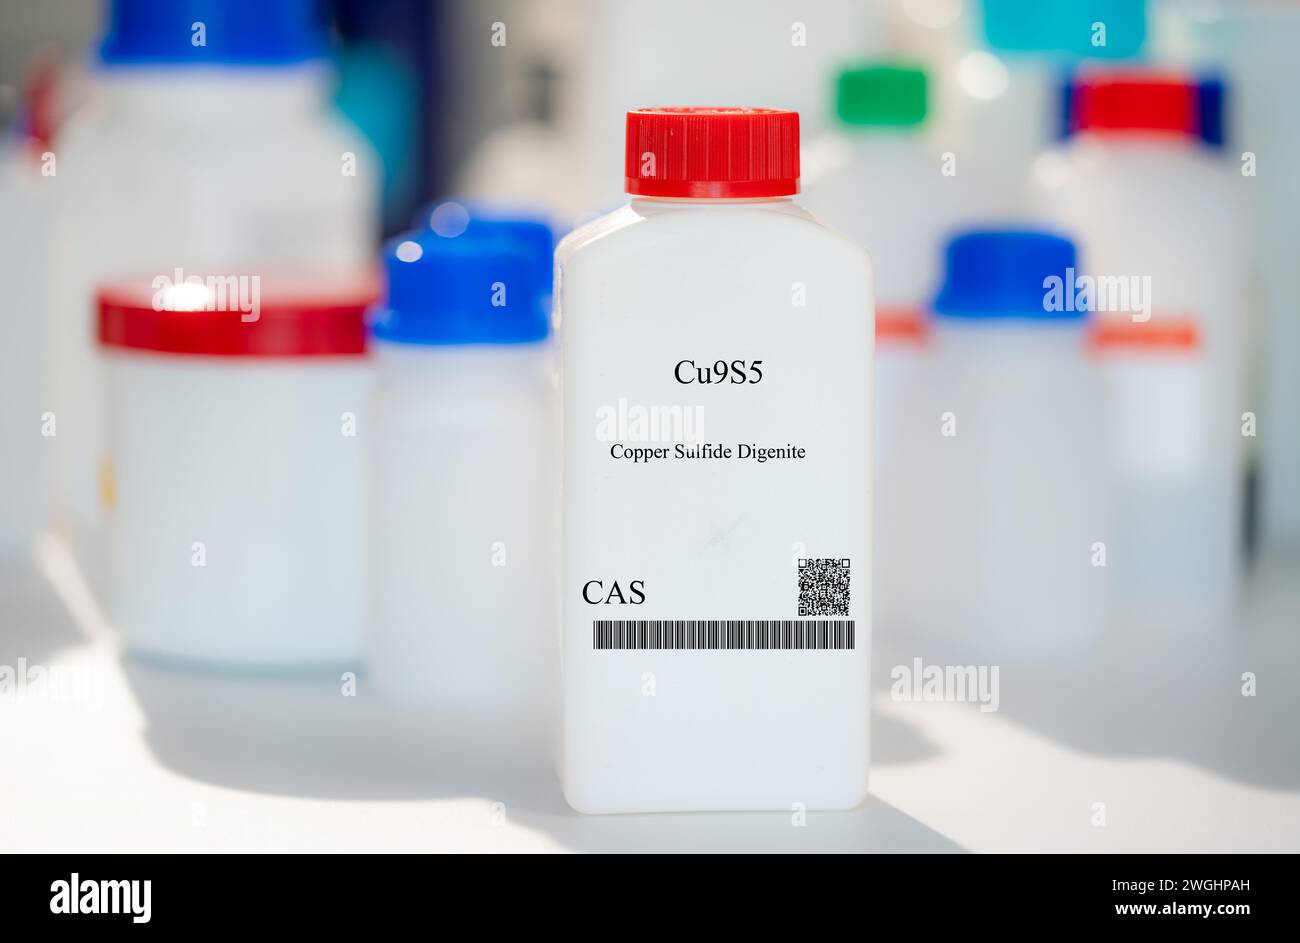 Cu9S5 sulfuro de cobre digenita CAS sustancia química en envases de laboratorio de plástico blanco Foto de stock